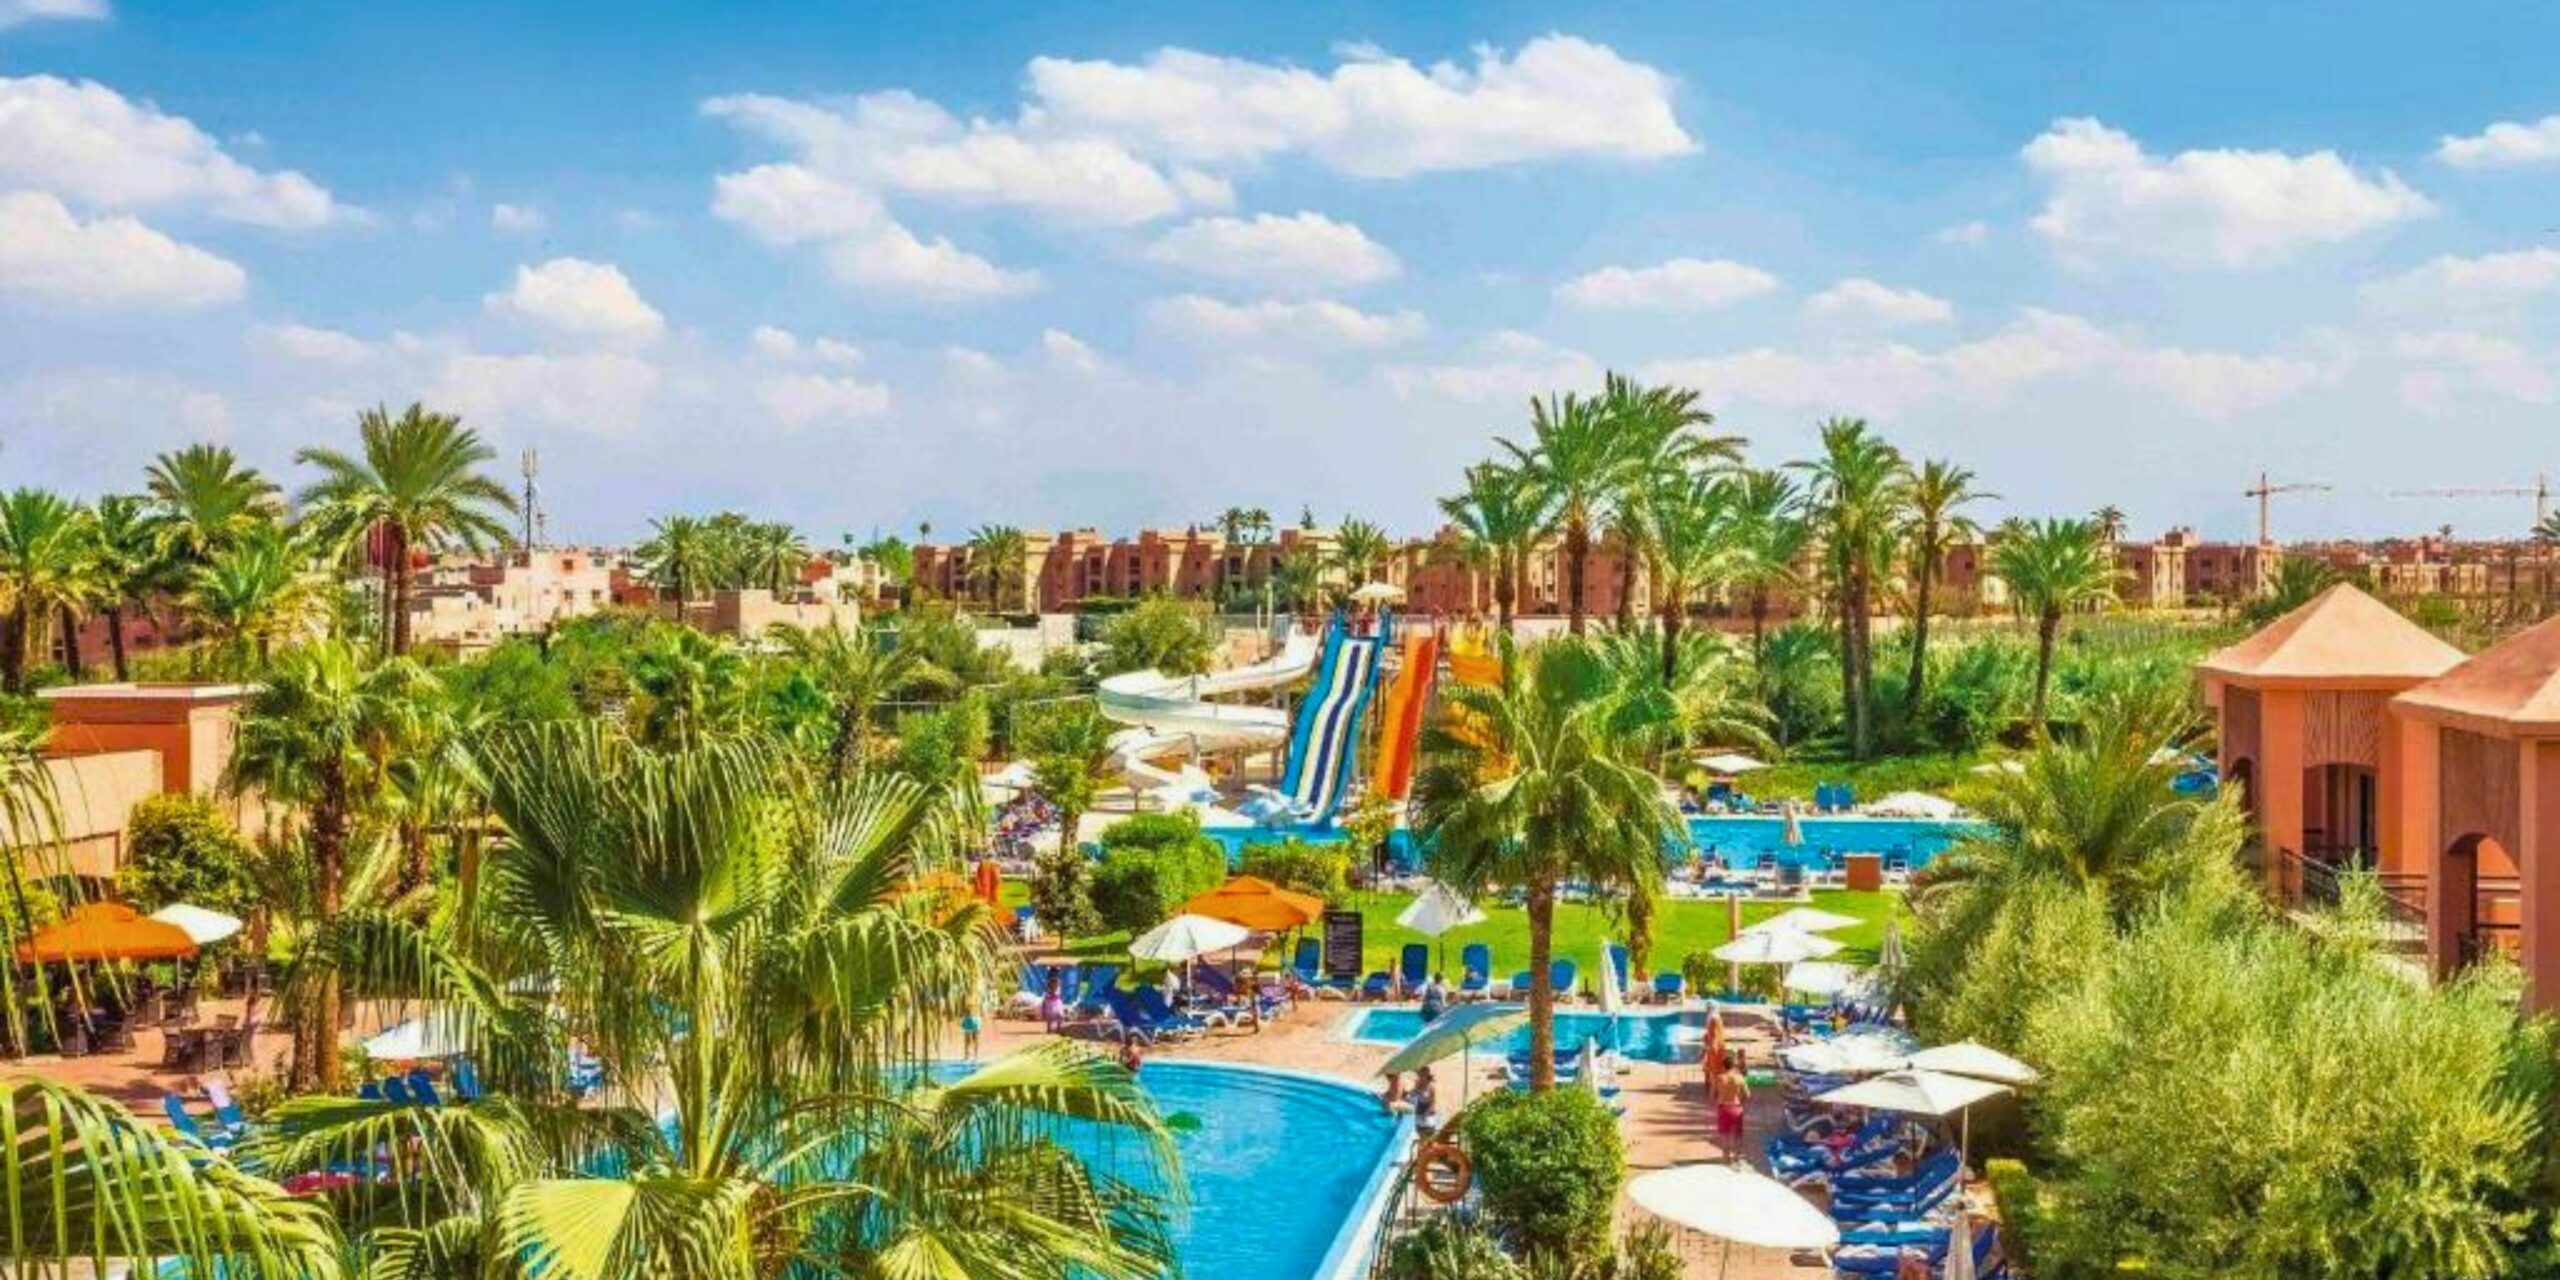 Hôtel avec parc aquatique Aquaparc à Marrakech